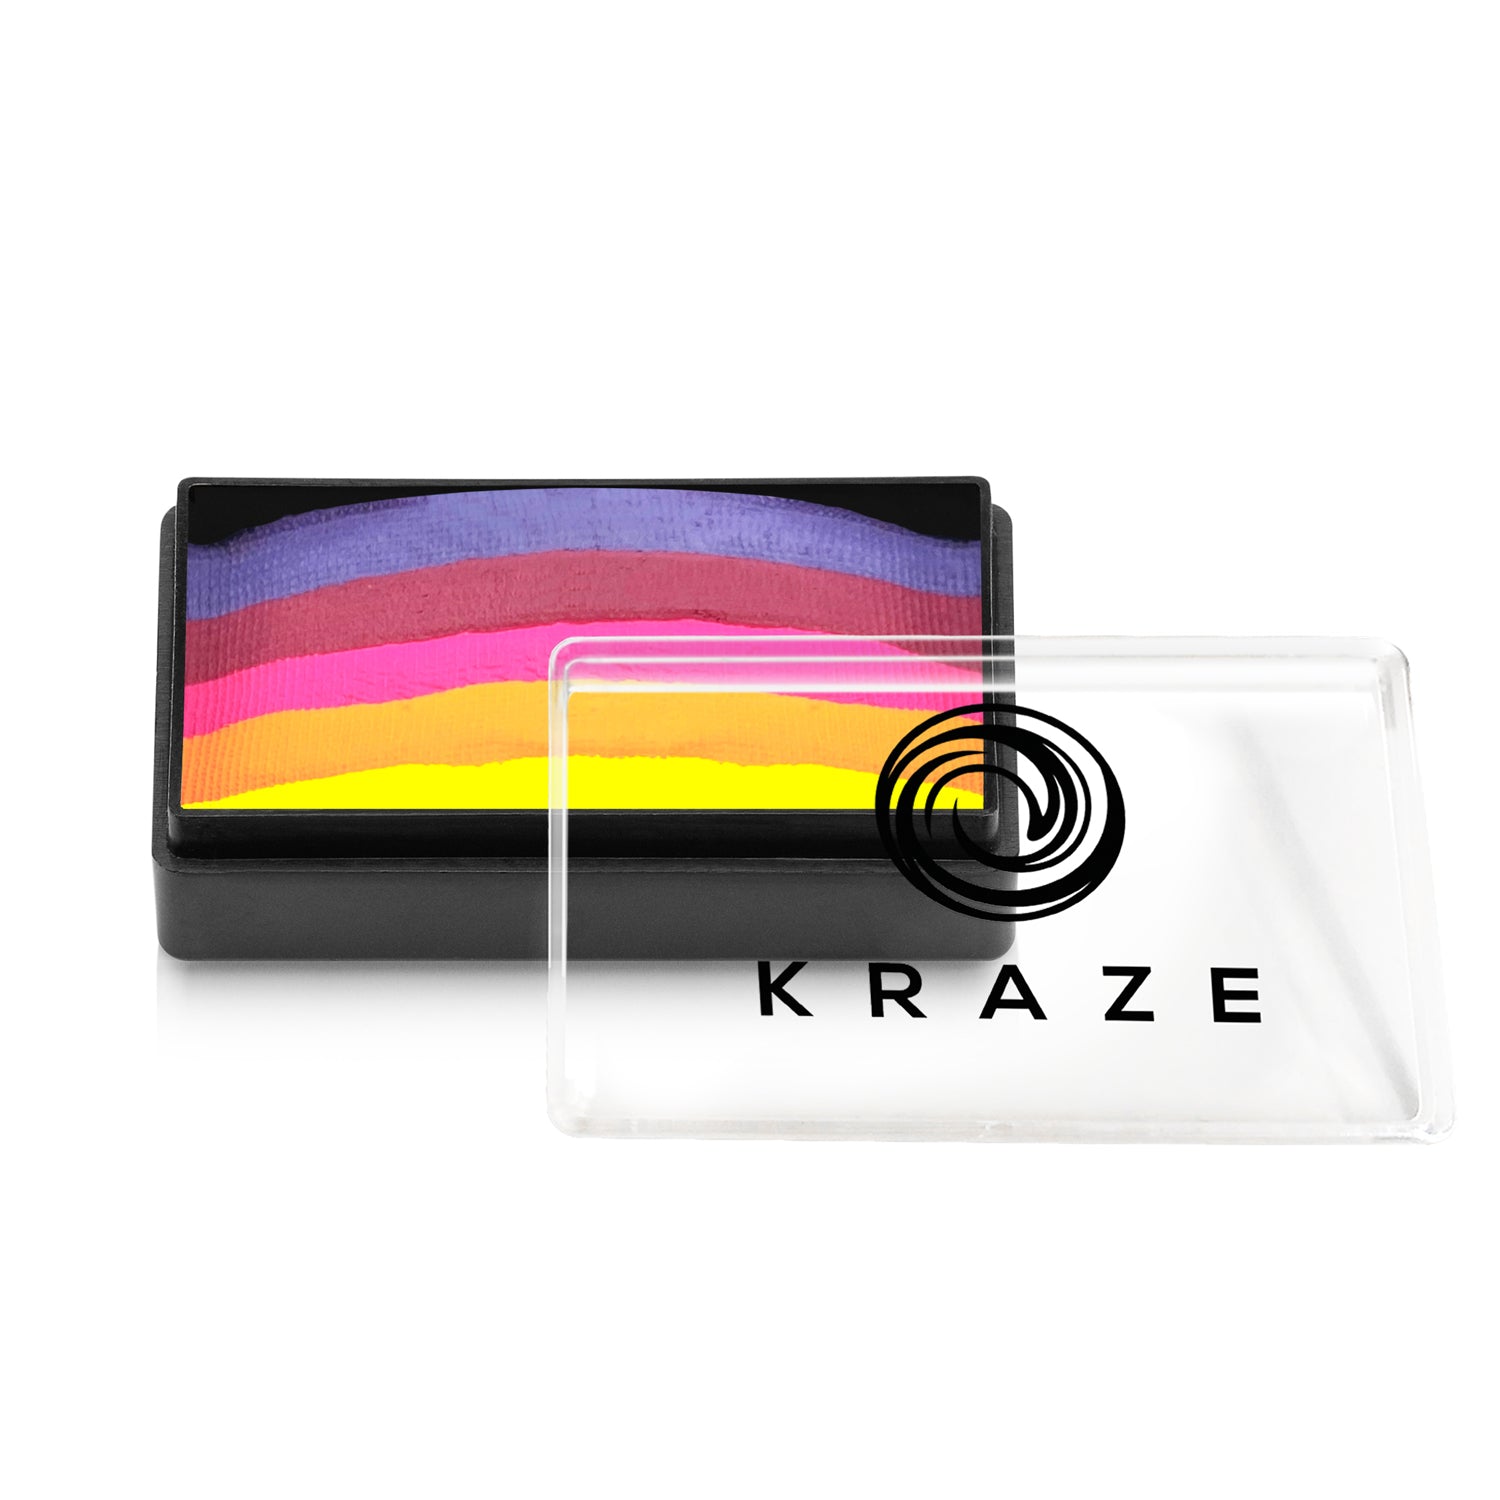 Kraze FX Domed Neon One Stroke Cake - Royal Sunset (25 gm)